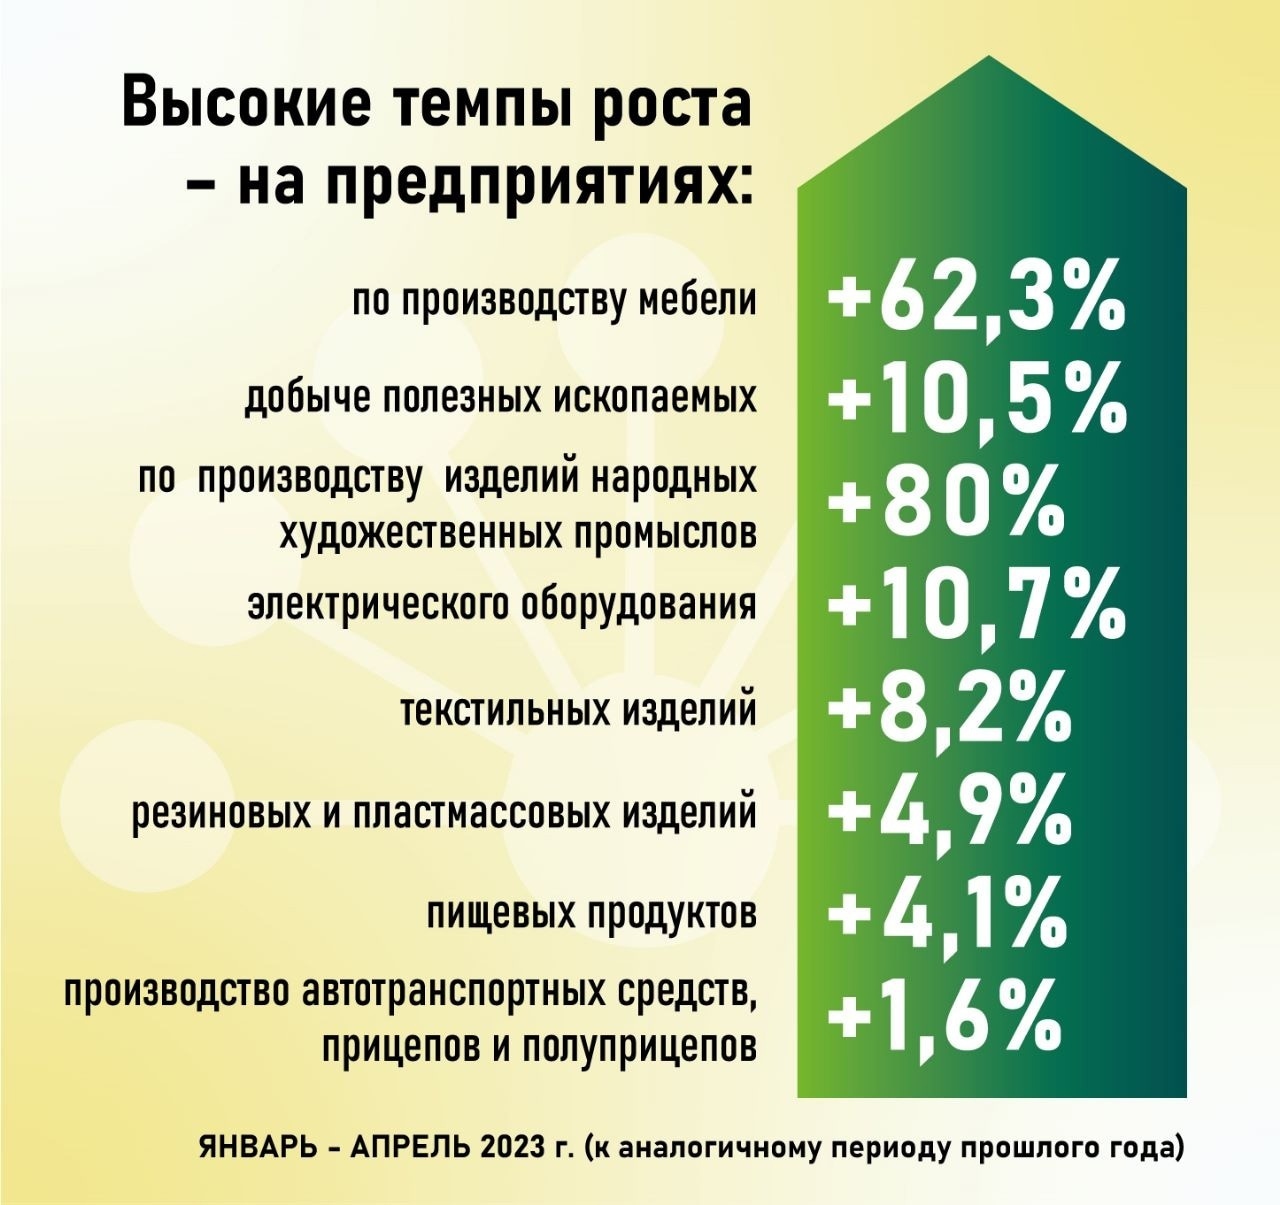 Глава Башкирии озвучил темпы роста промышленности